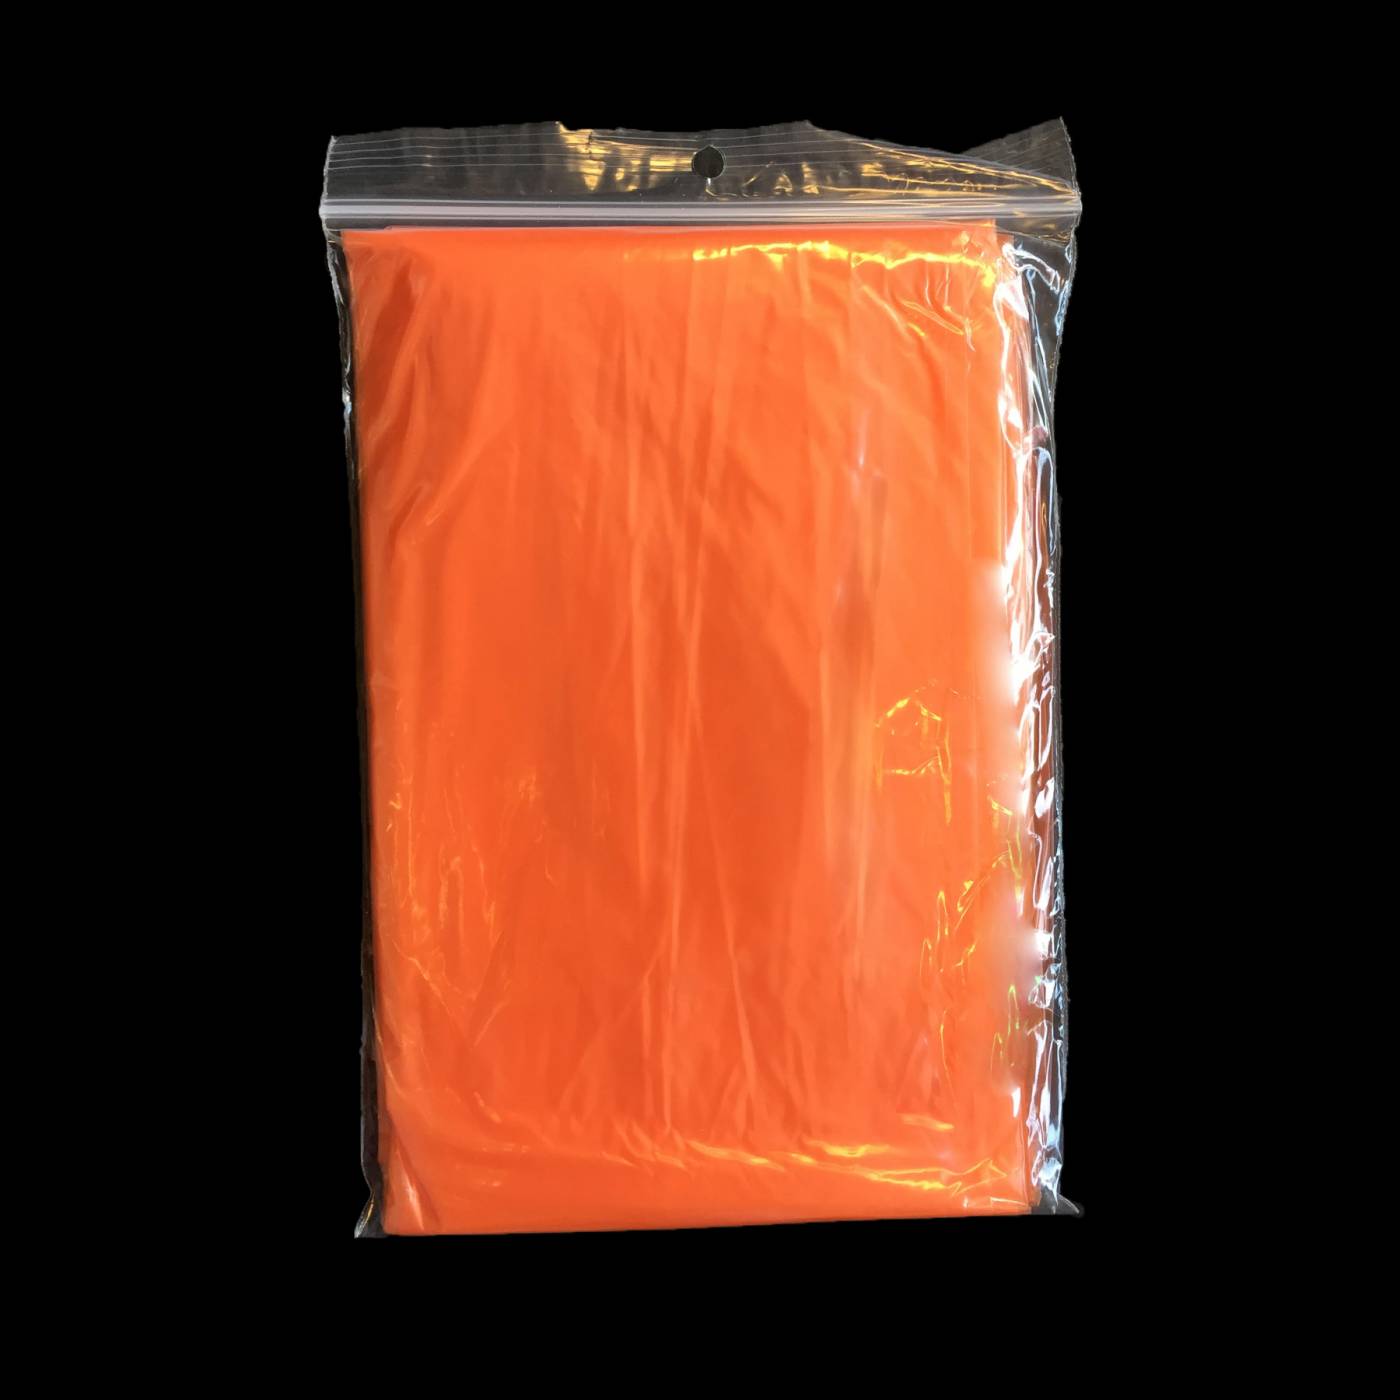 Raad eens hemel Respectvol Wegwerp poncho oranje onbedrukt kopen? | De Horeca Bazaar